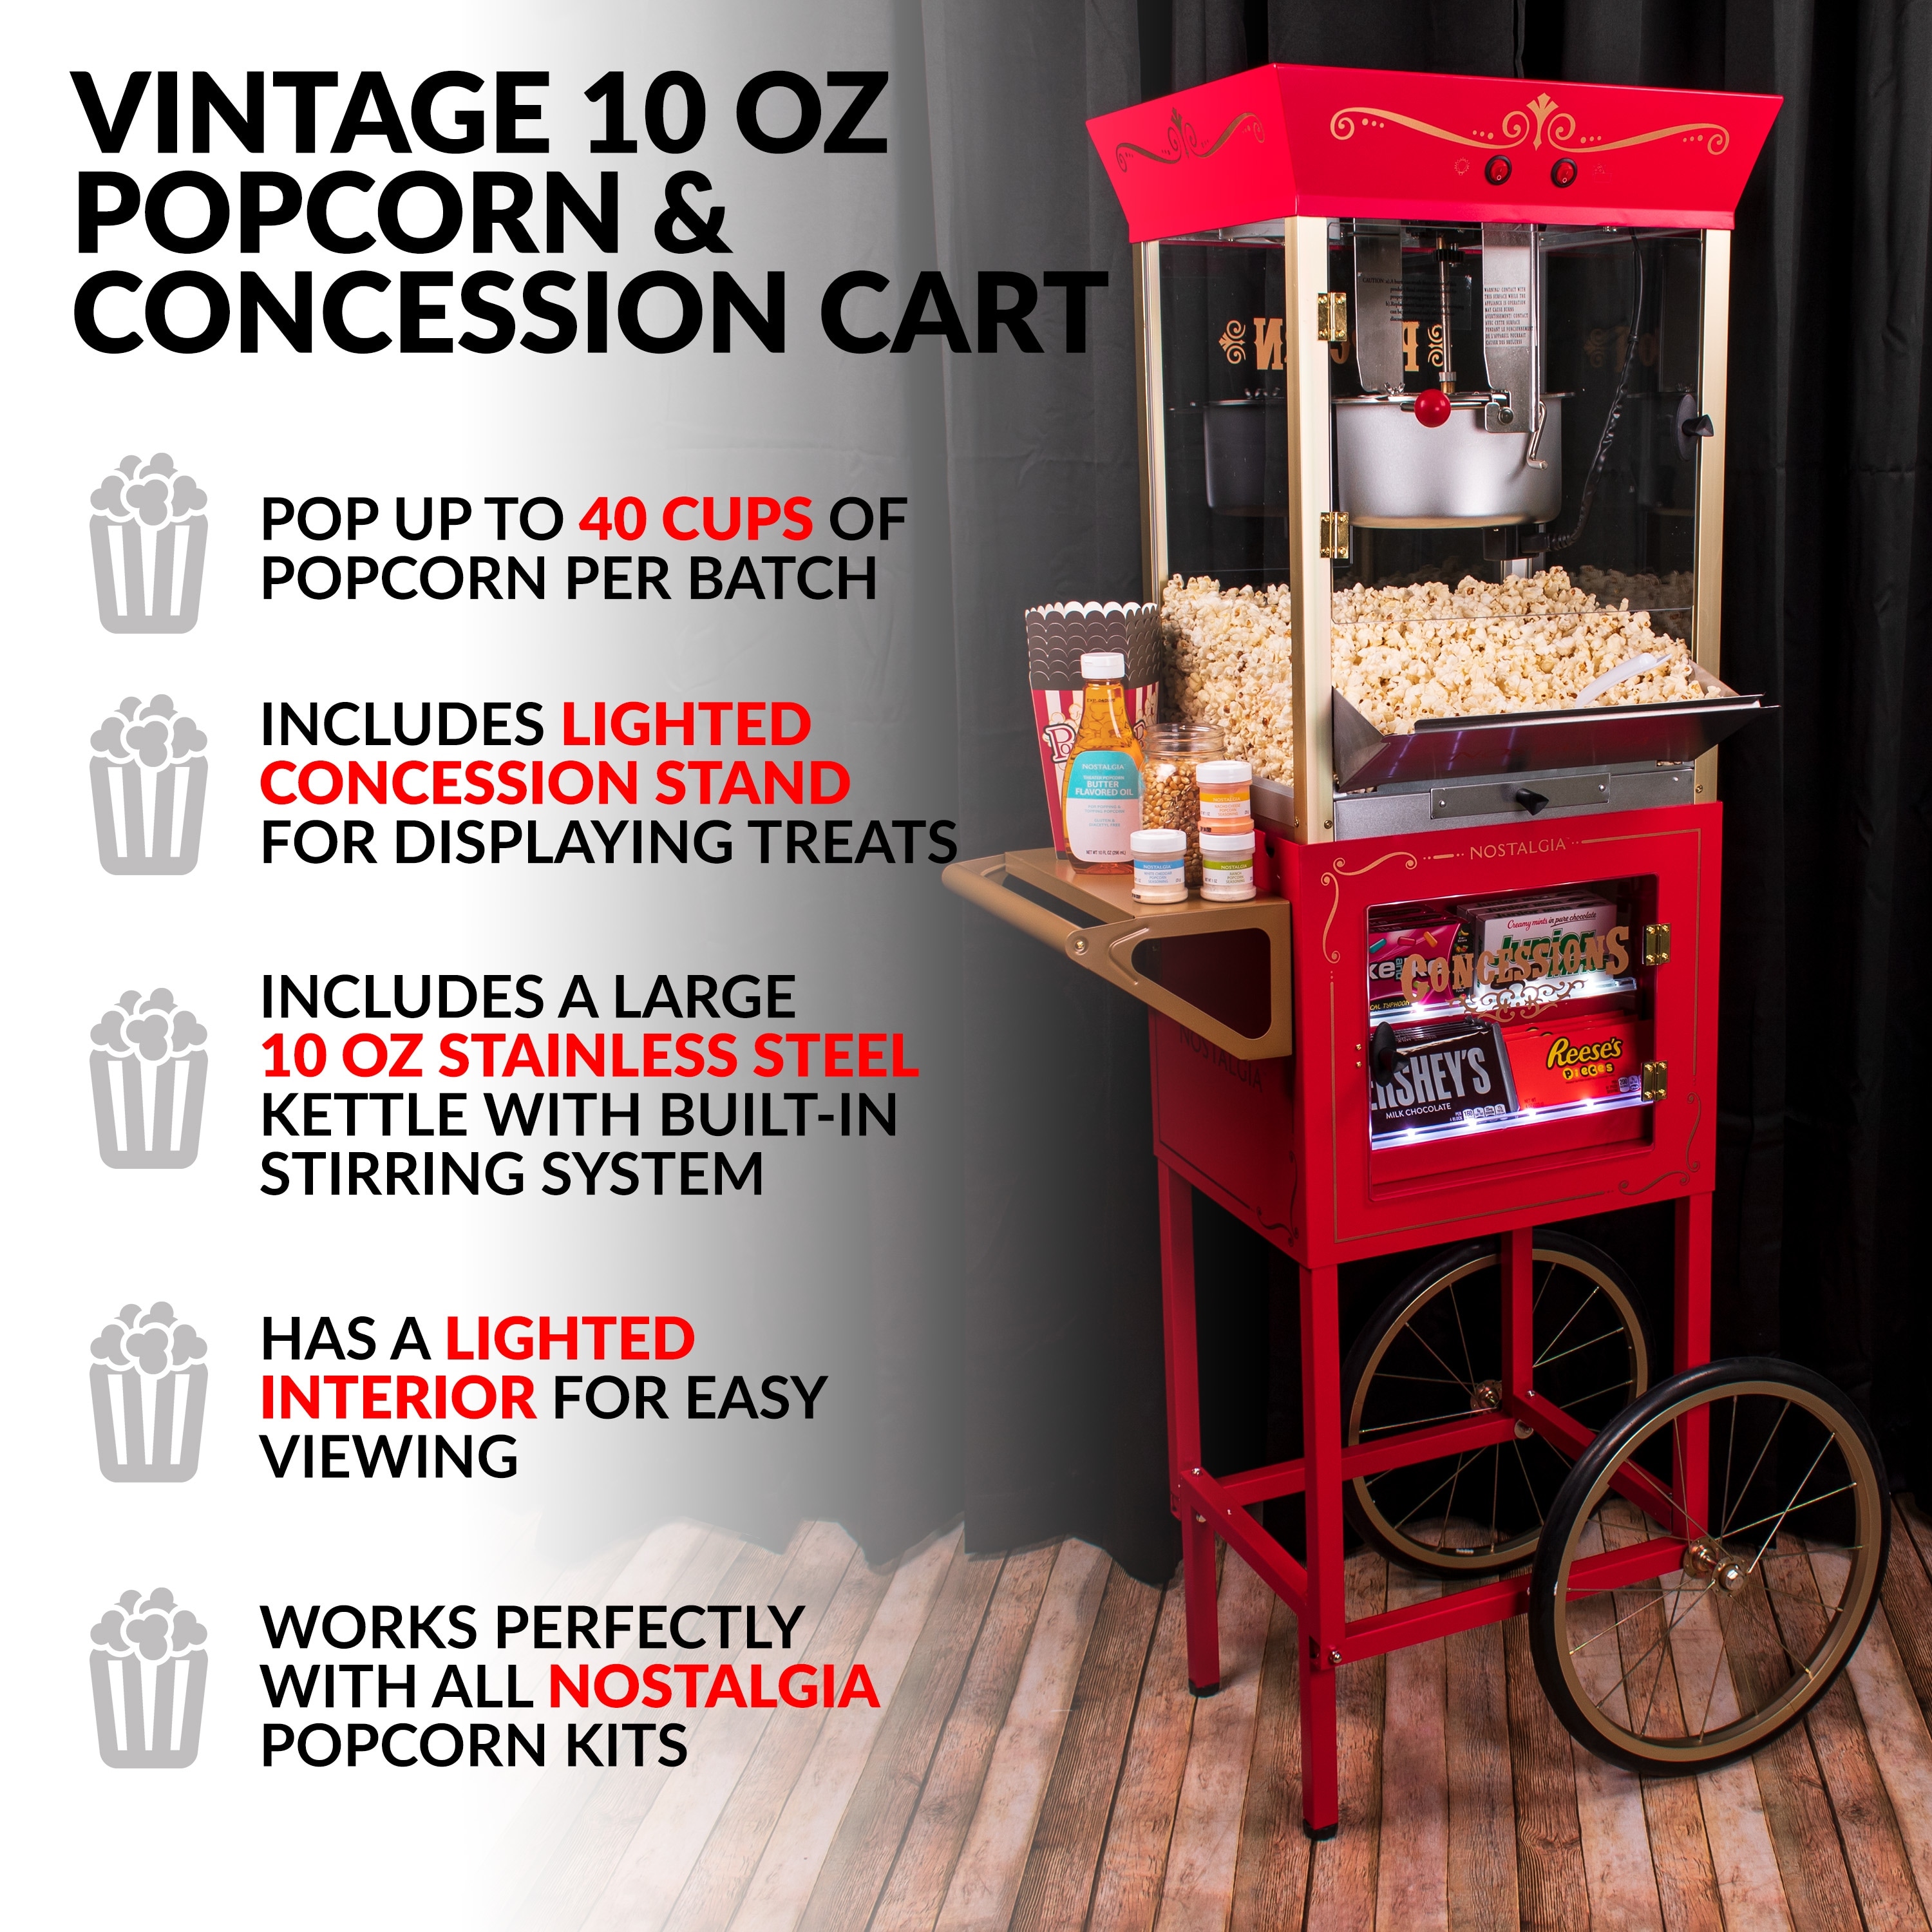 Nostalgia 45 Vintage 2.5-Oz. Popcorn Cart